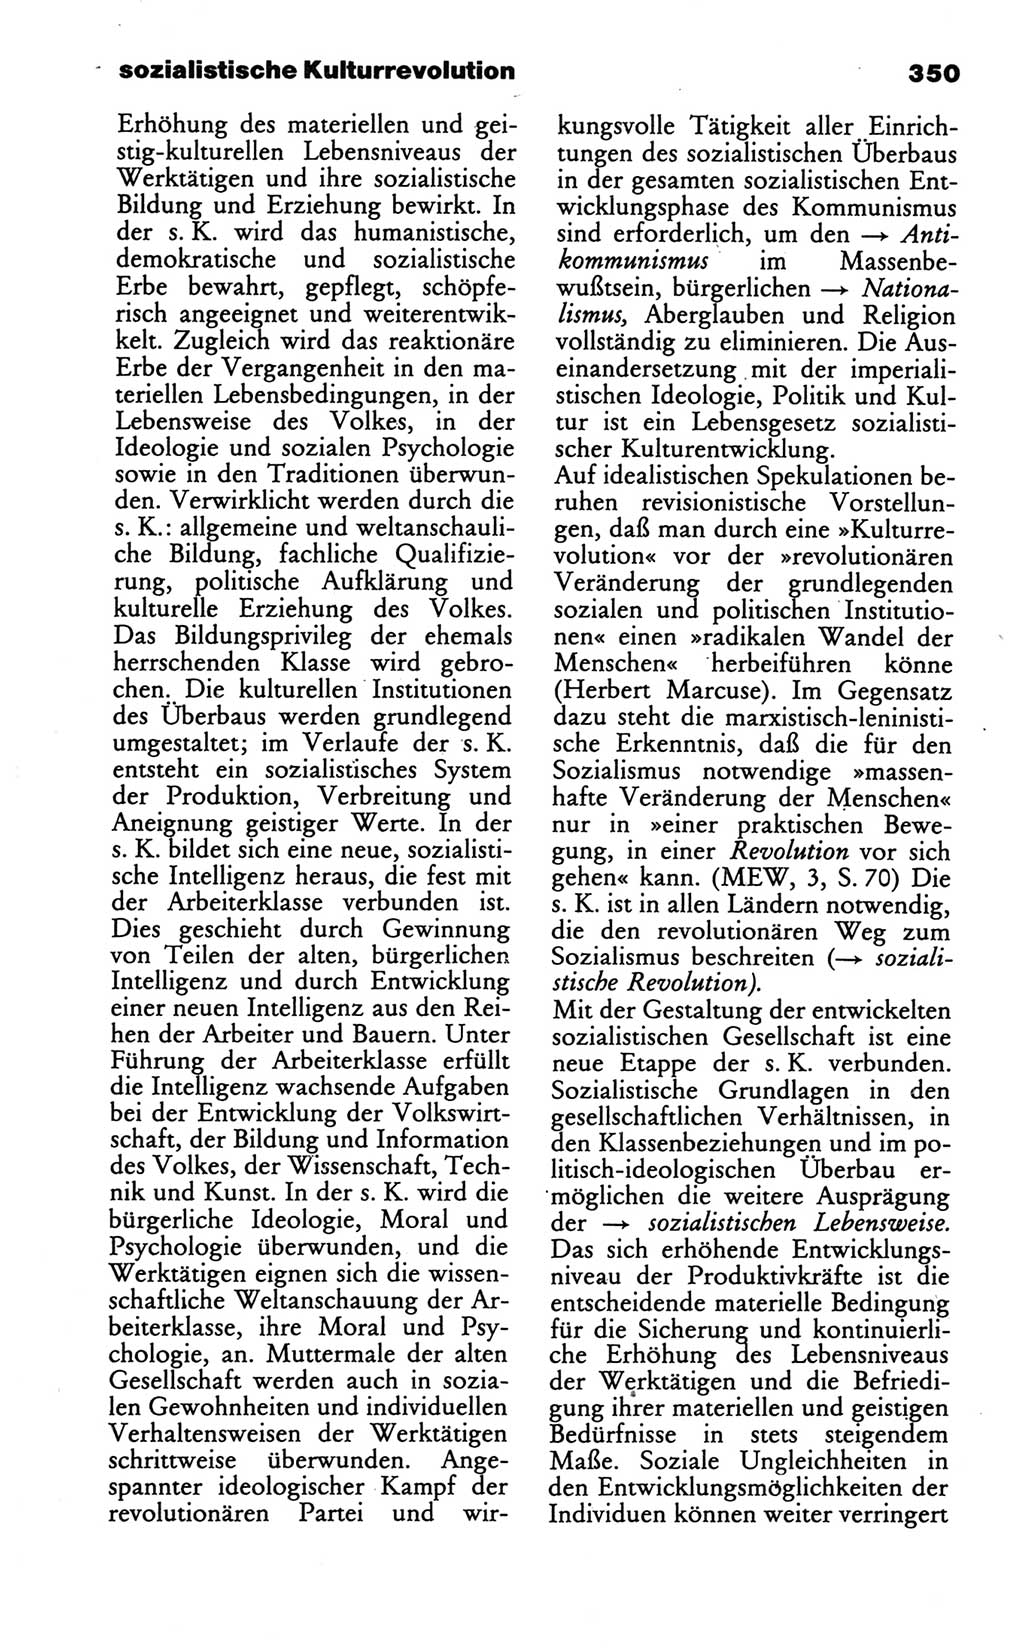 Wörterbuch des wissenschaftlichen Kommunismus [Deutsche Demokratische Republik (DDR)] 1986, Seite 350 (Wb. wiss. Komm. DDR 1986, S. 350)